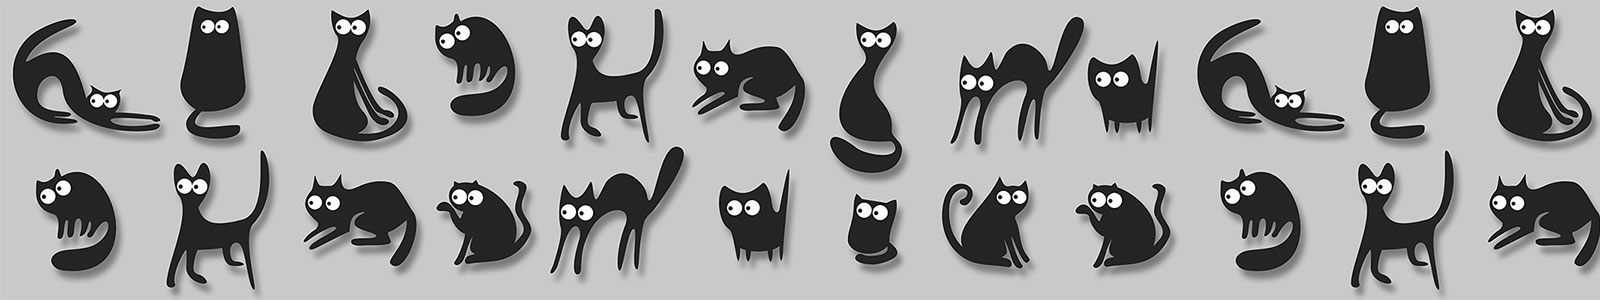 №3081 - Многоликая и веселая черная кошка